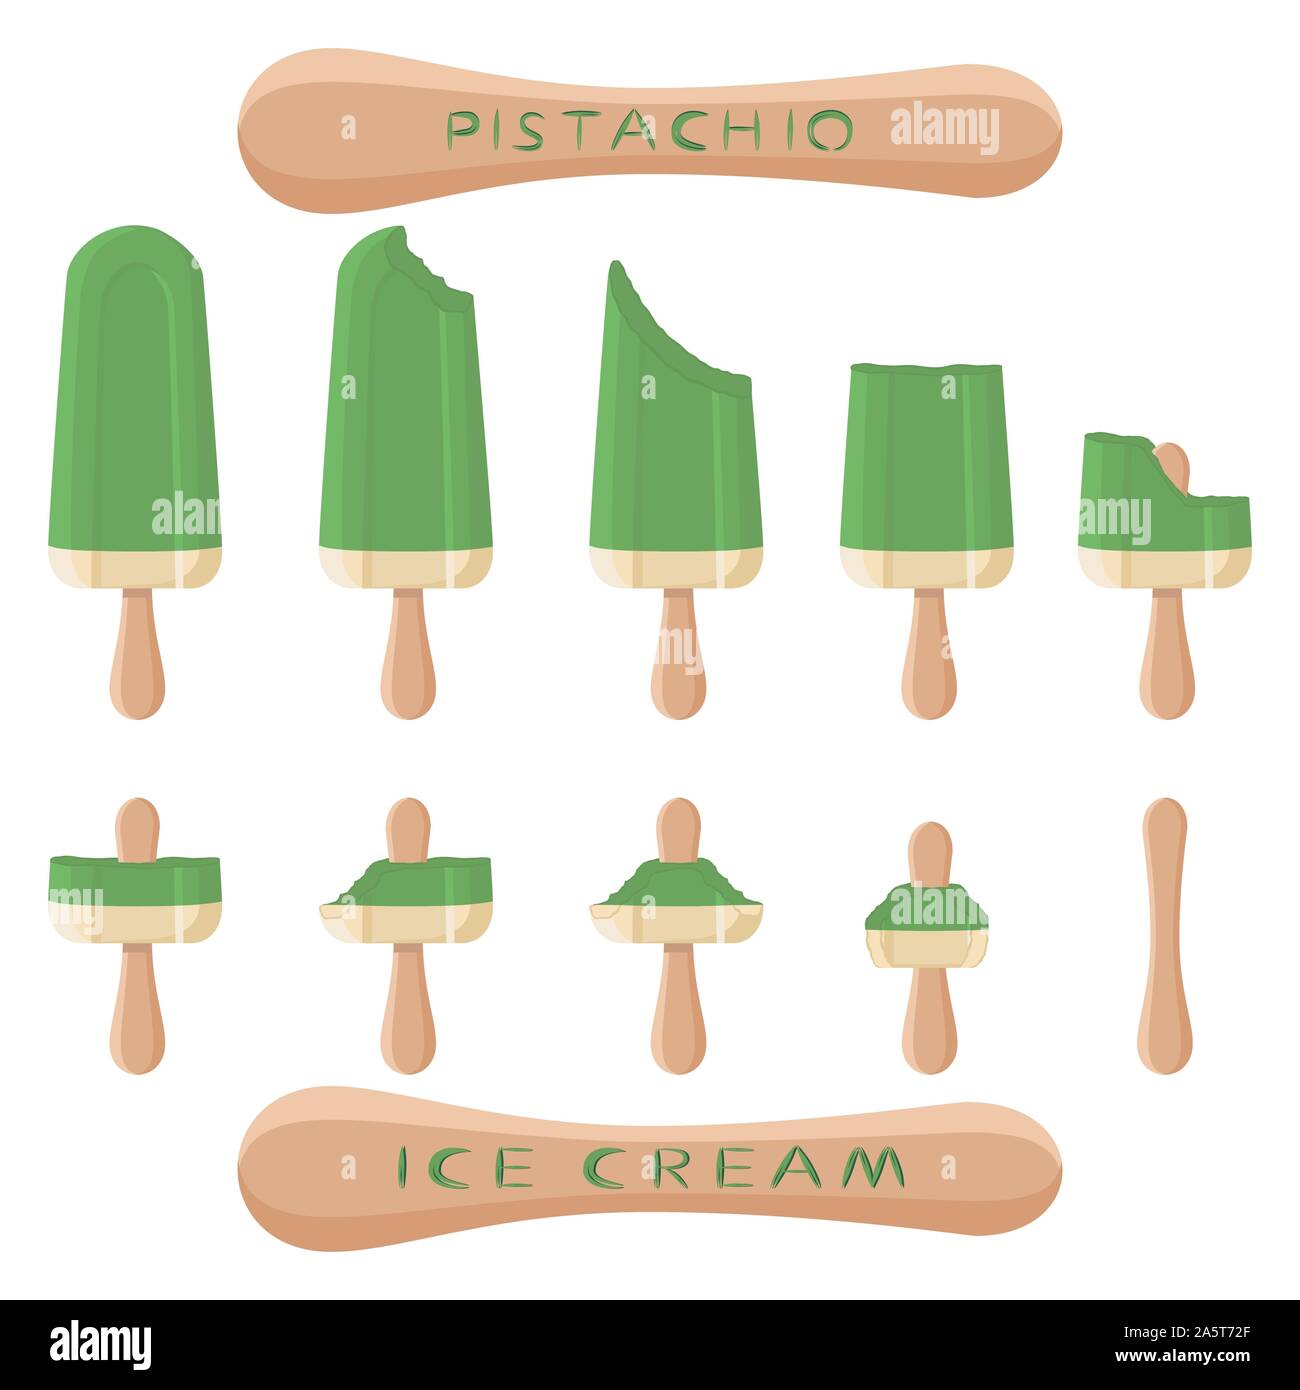 Logo d'illustration vectorielle pour les produits de crème glacée à la pistache sur stick. La crème glacée est constituée de glace froid sucré, savoureux desserts congelés ensemble. Fres Illustration de Vecteur